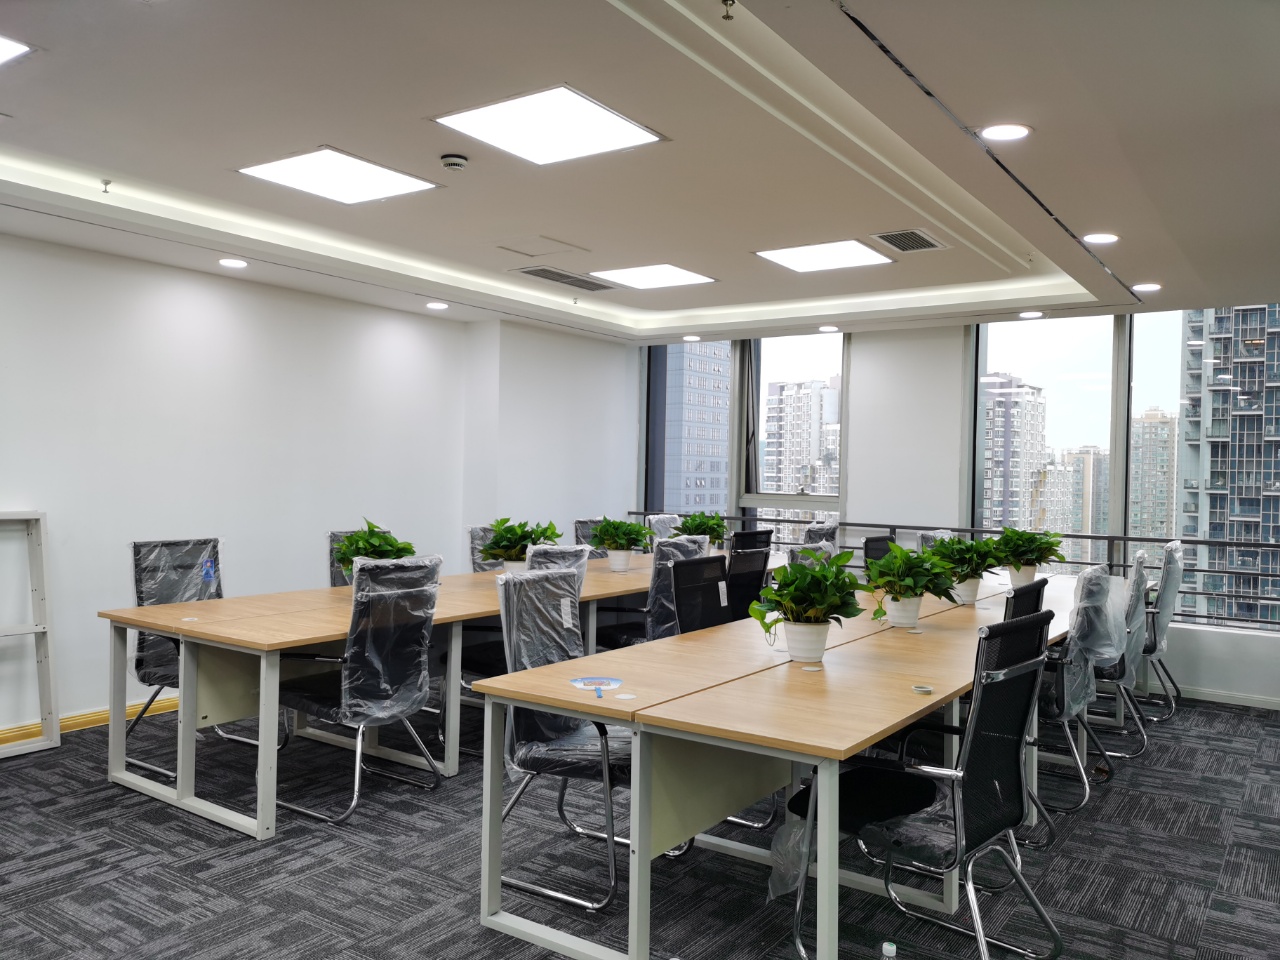 锦江区花样年喜年广场精装168平办公室 户型方正 采光优秀 生活便利